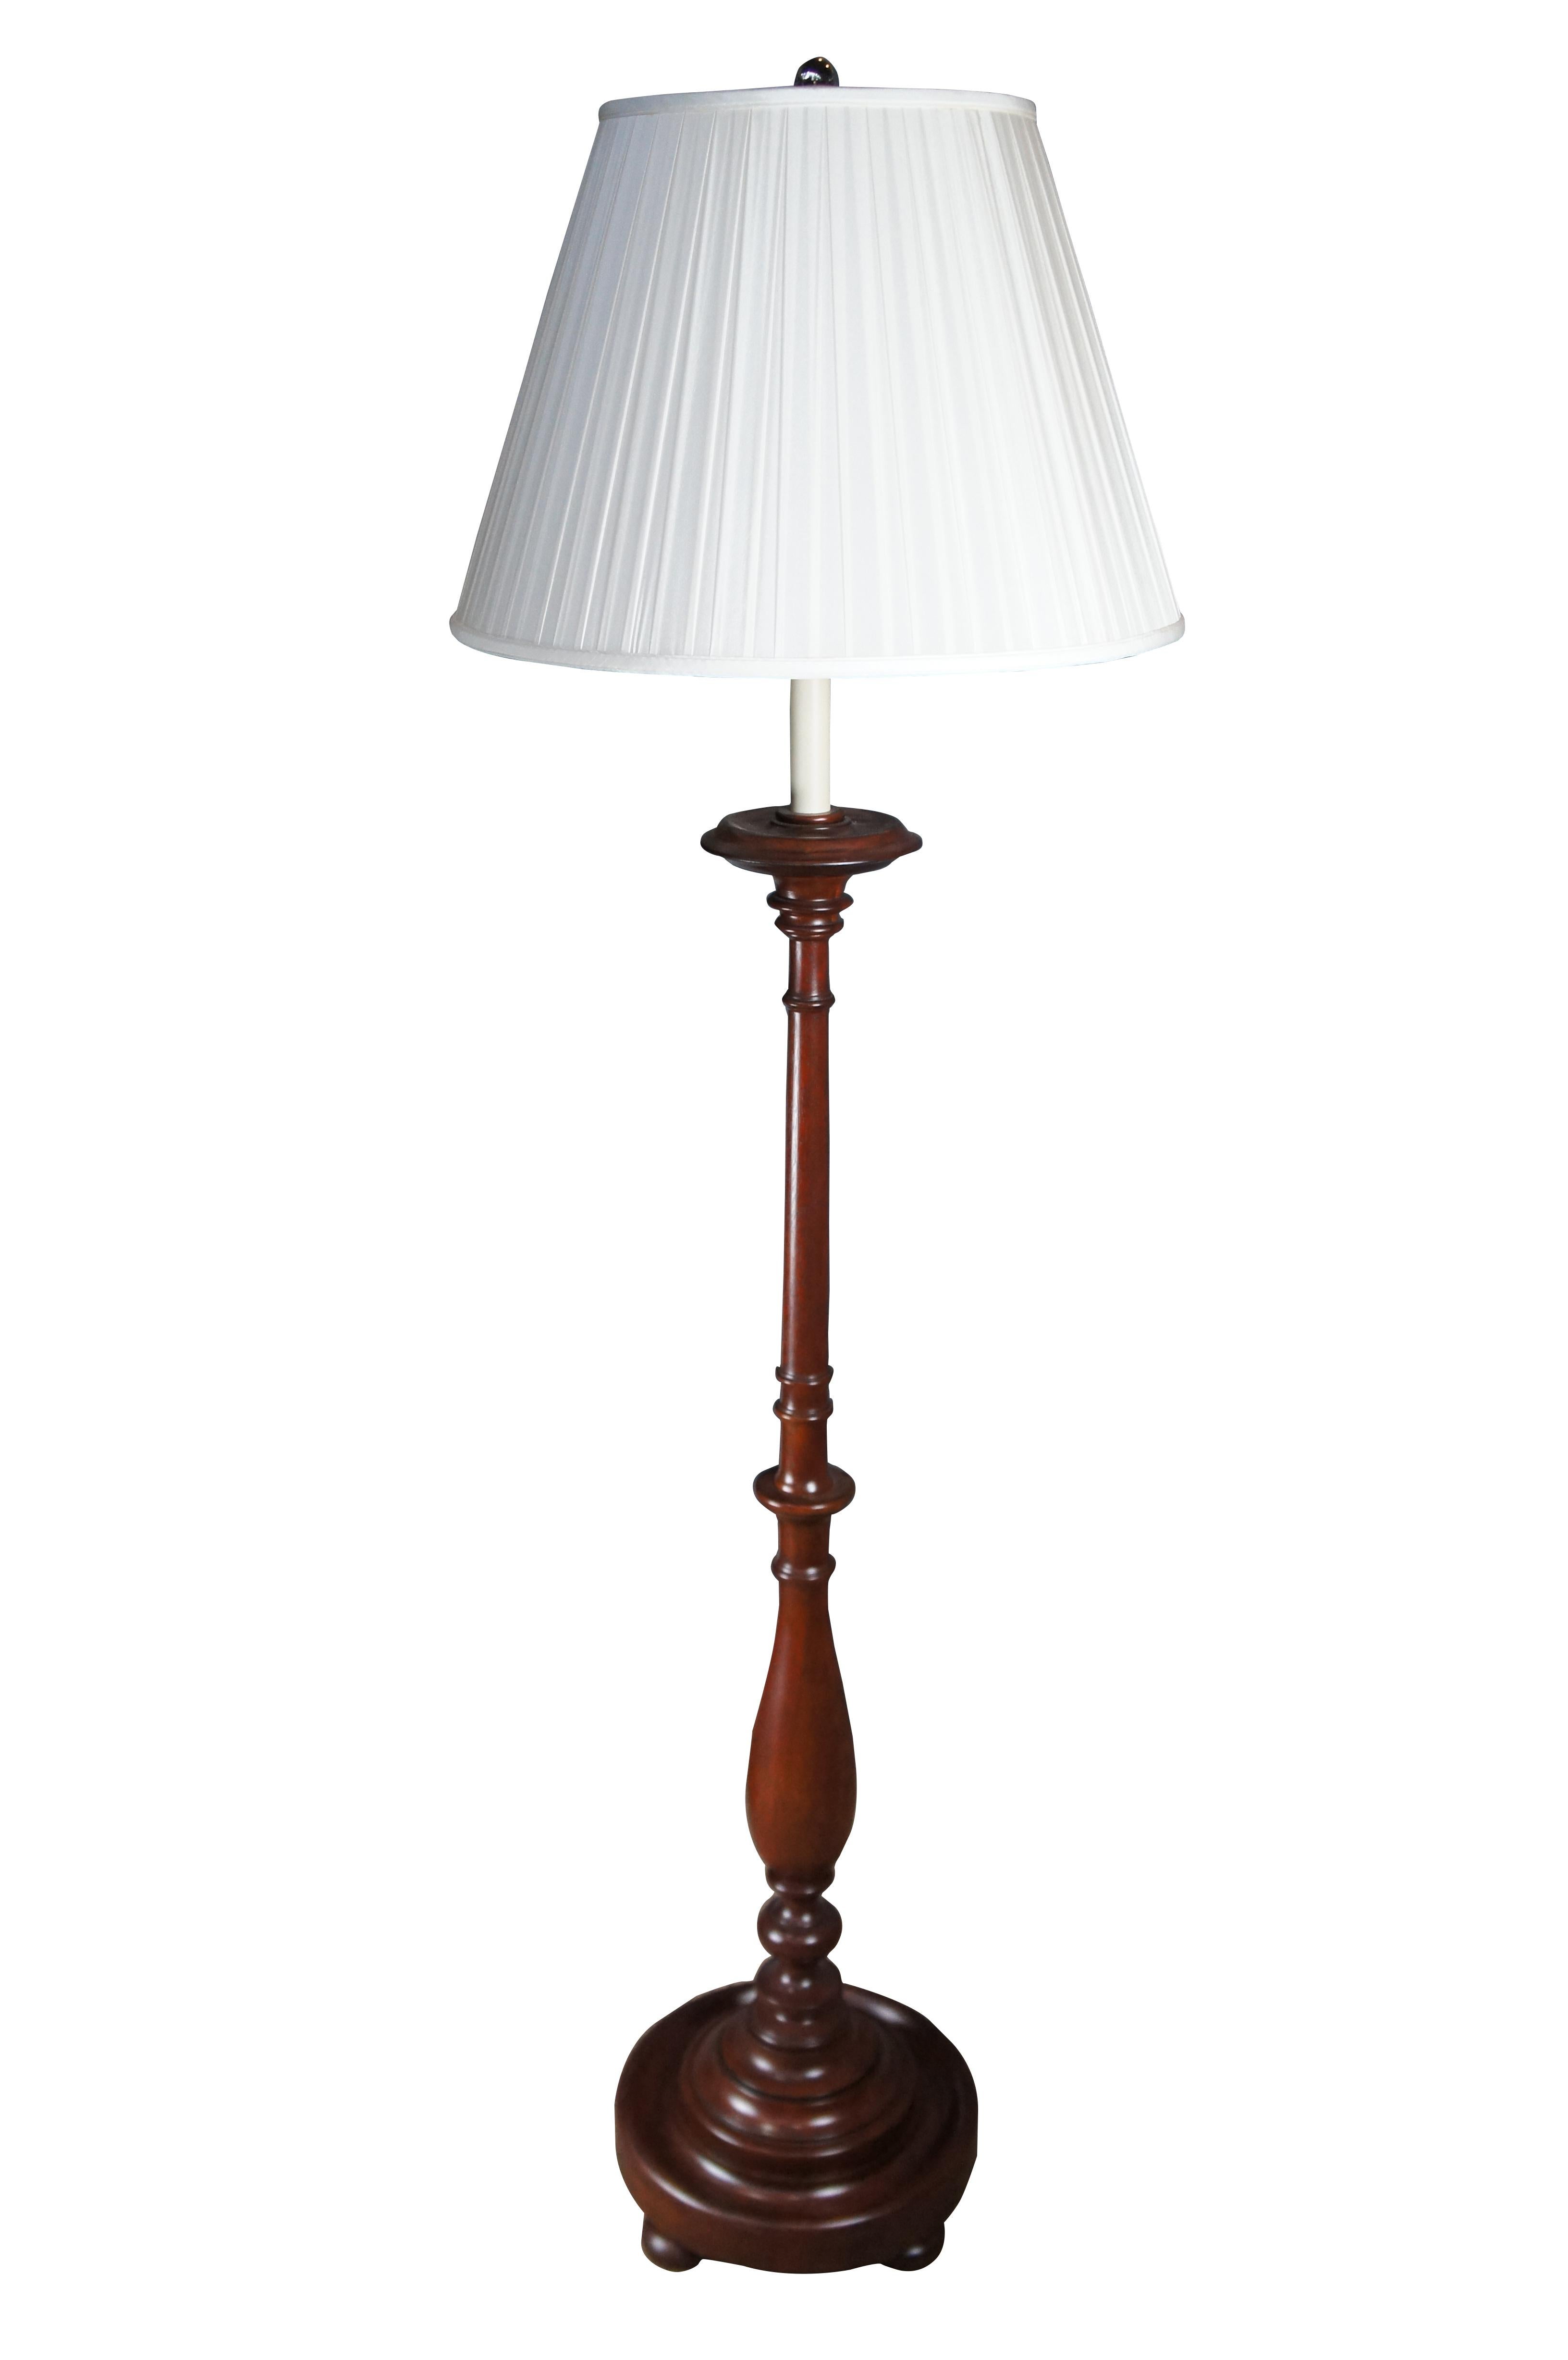 Eine traditionelle Stehlampe aus reichlich braunem Mahagoni von Ralph Lauren. Die Lampe hat die Form eines großen frühamerikanischen / kolonialen Kerzenständers mit einem Kerzenhalter in der Mitte und einer verstellbaren Harfe, die das Heben und